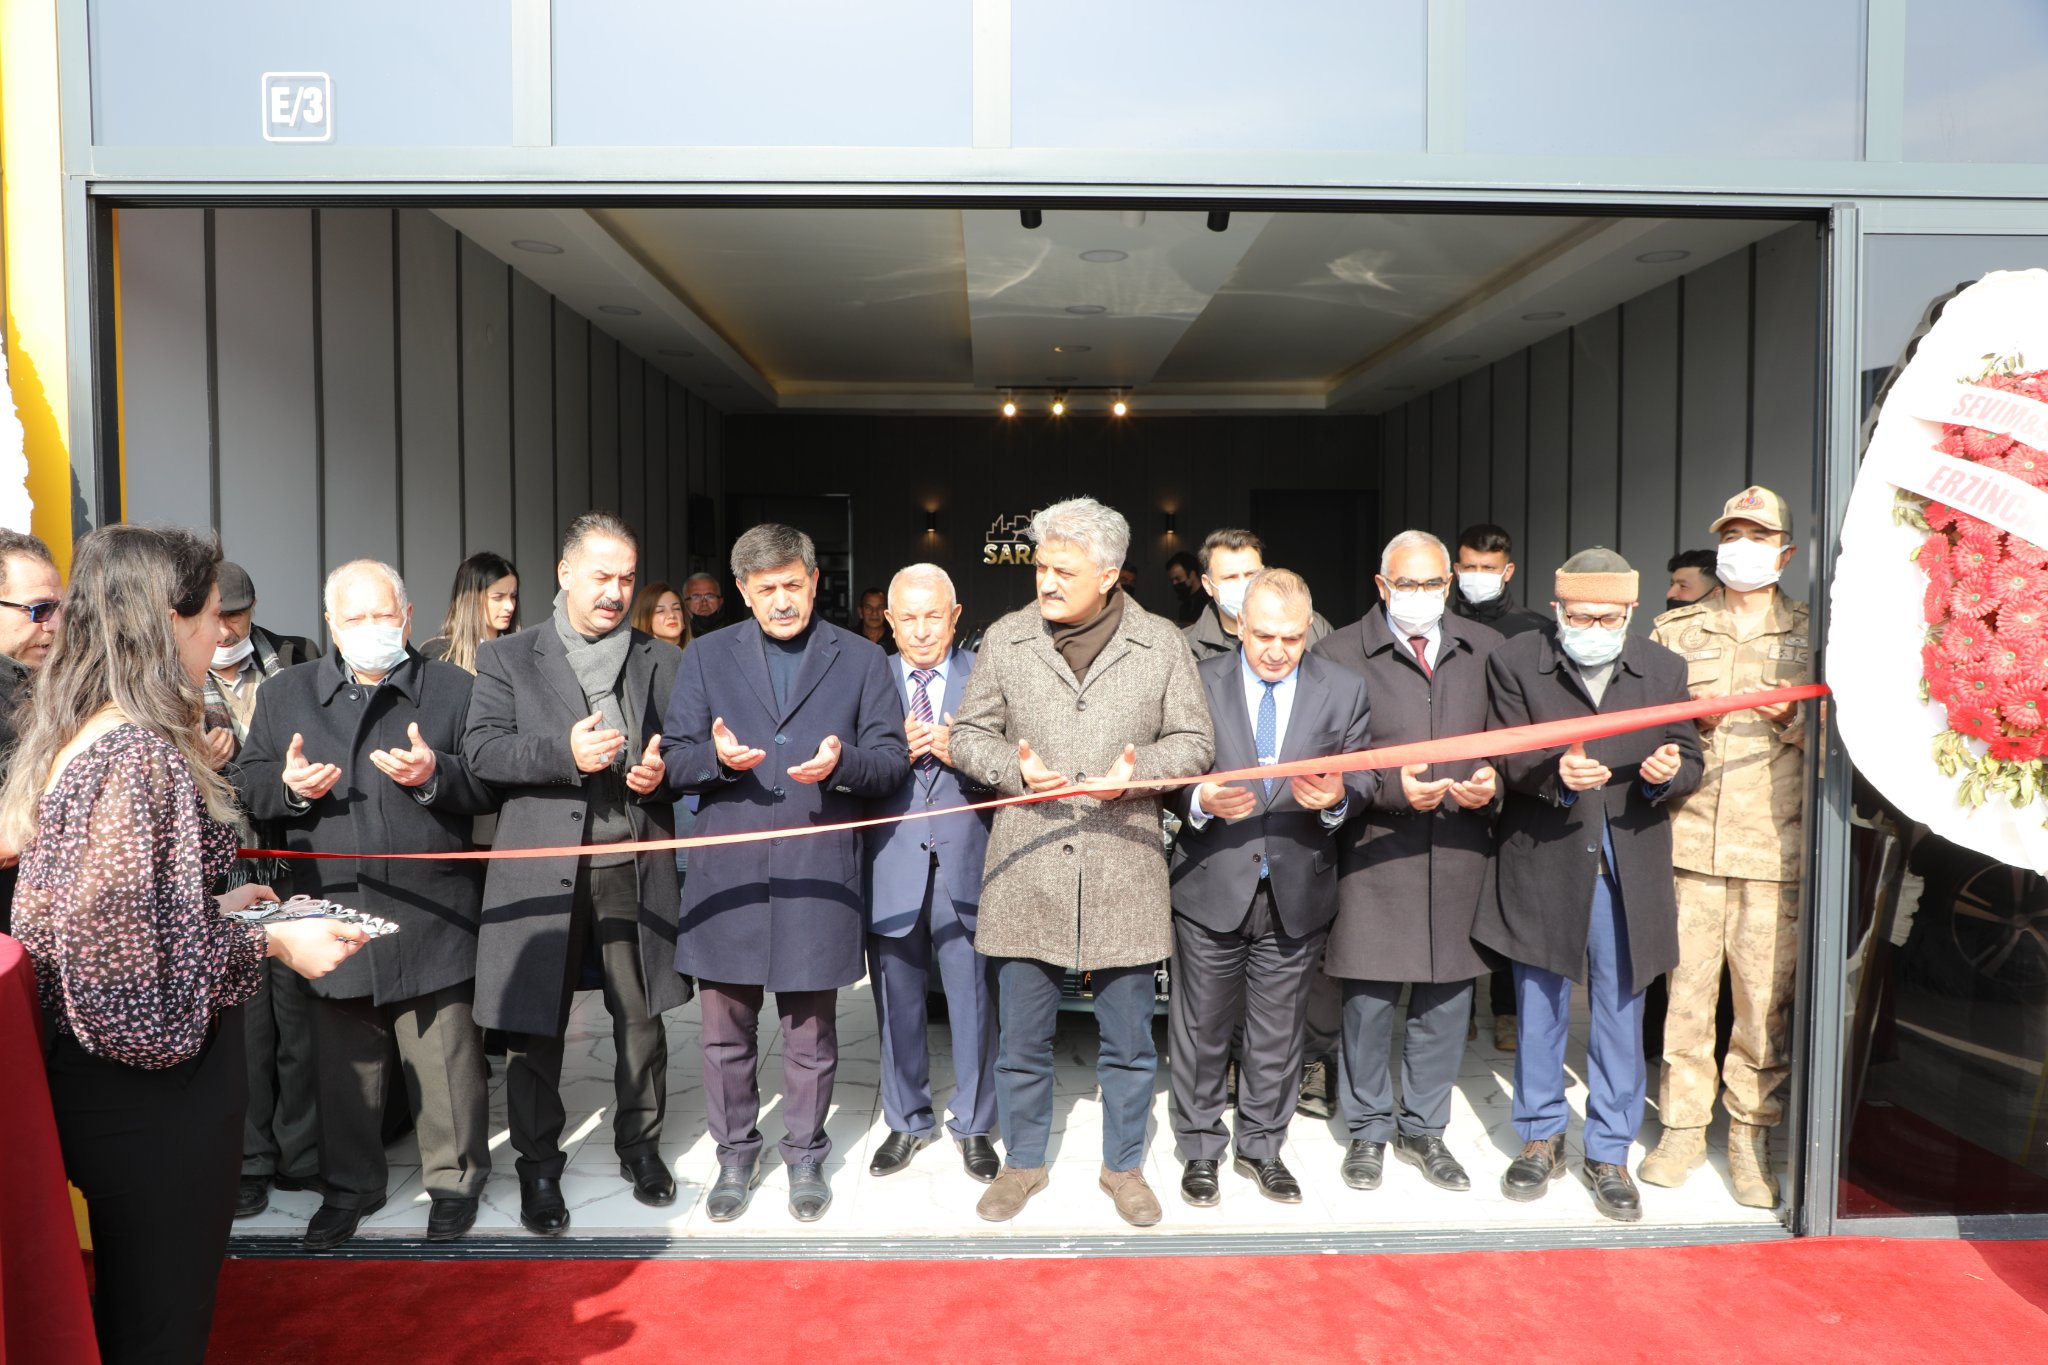 Sayın Erzincan Valisi Mehmet Makas, Yeni Galericiler Sitesi’nde hizmete giren Saraypark Auto isimli işyerinin açılışına katıldı